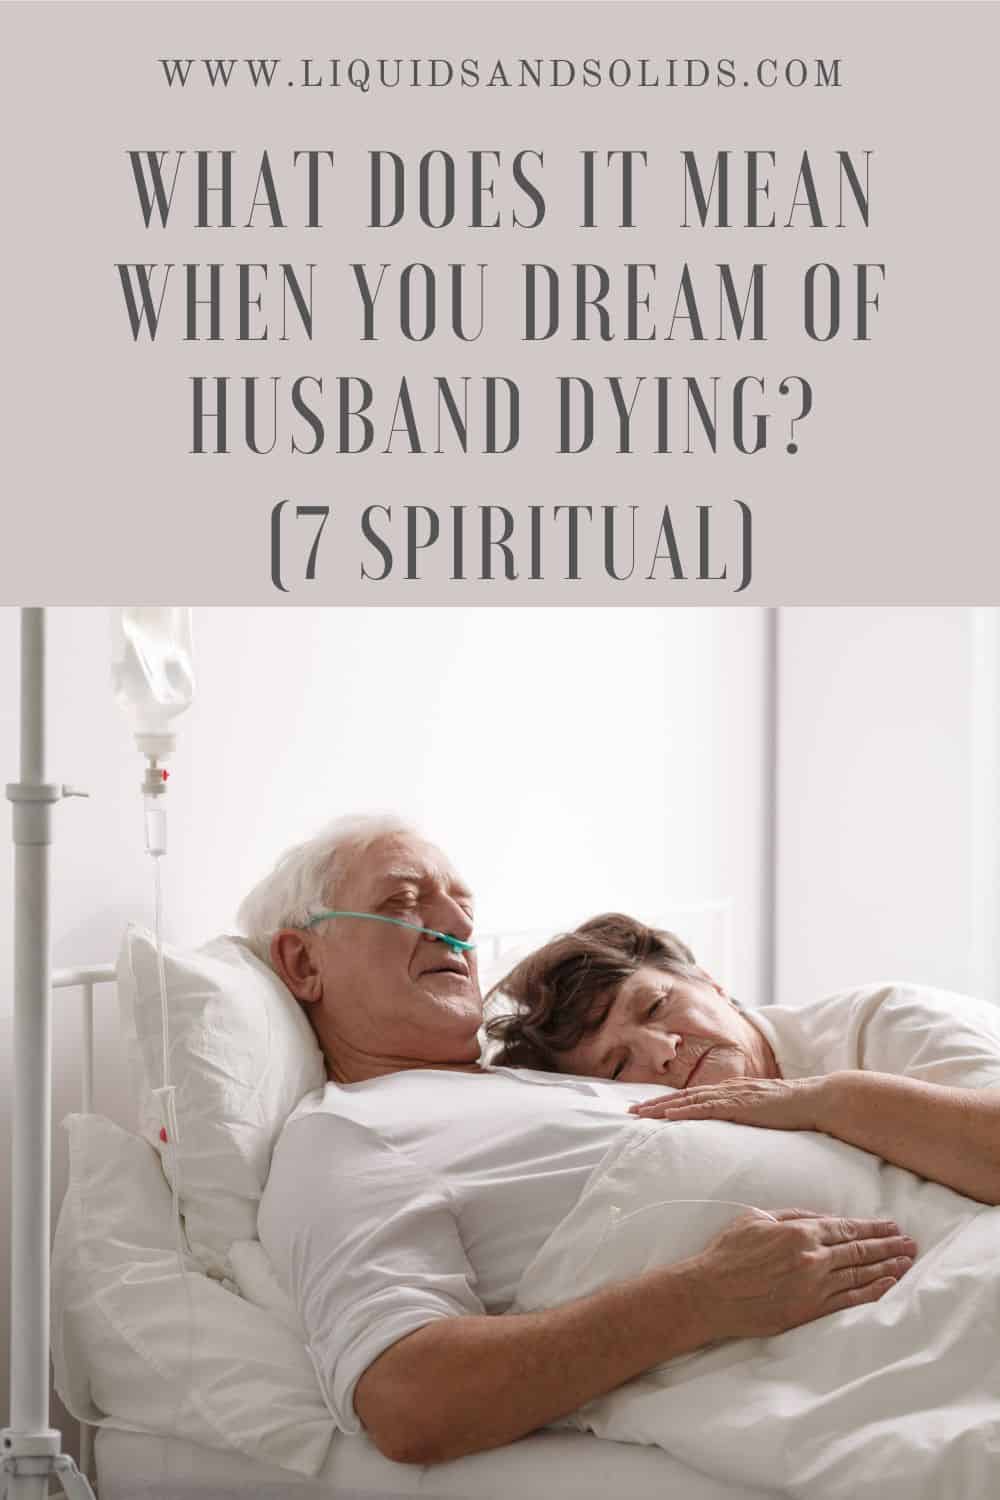  Rêver de la mort de votre mari (7 significations spirituelles)